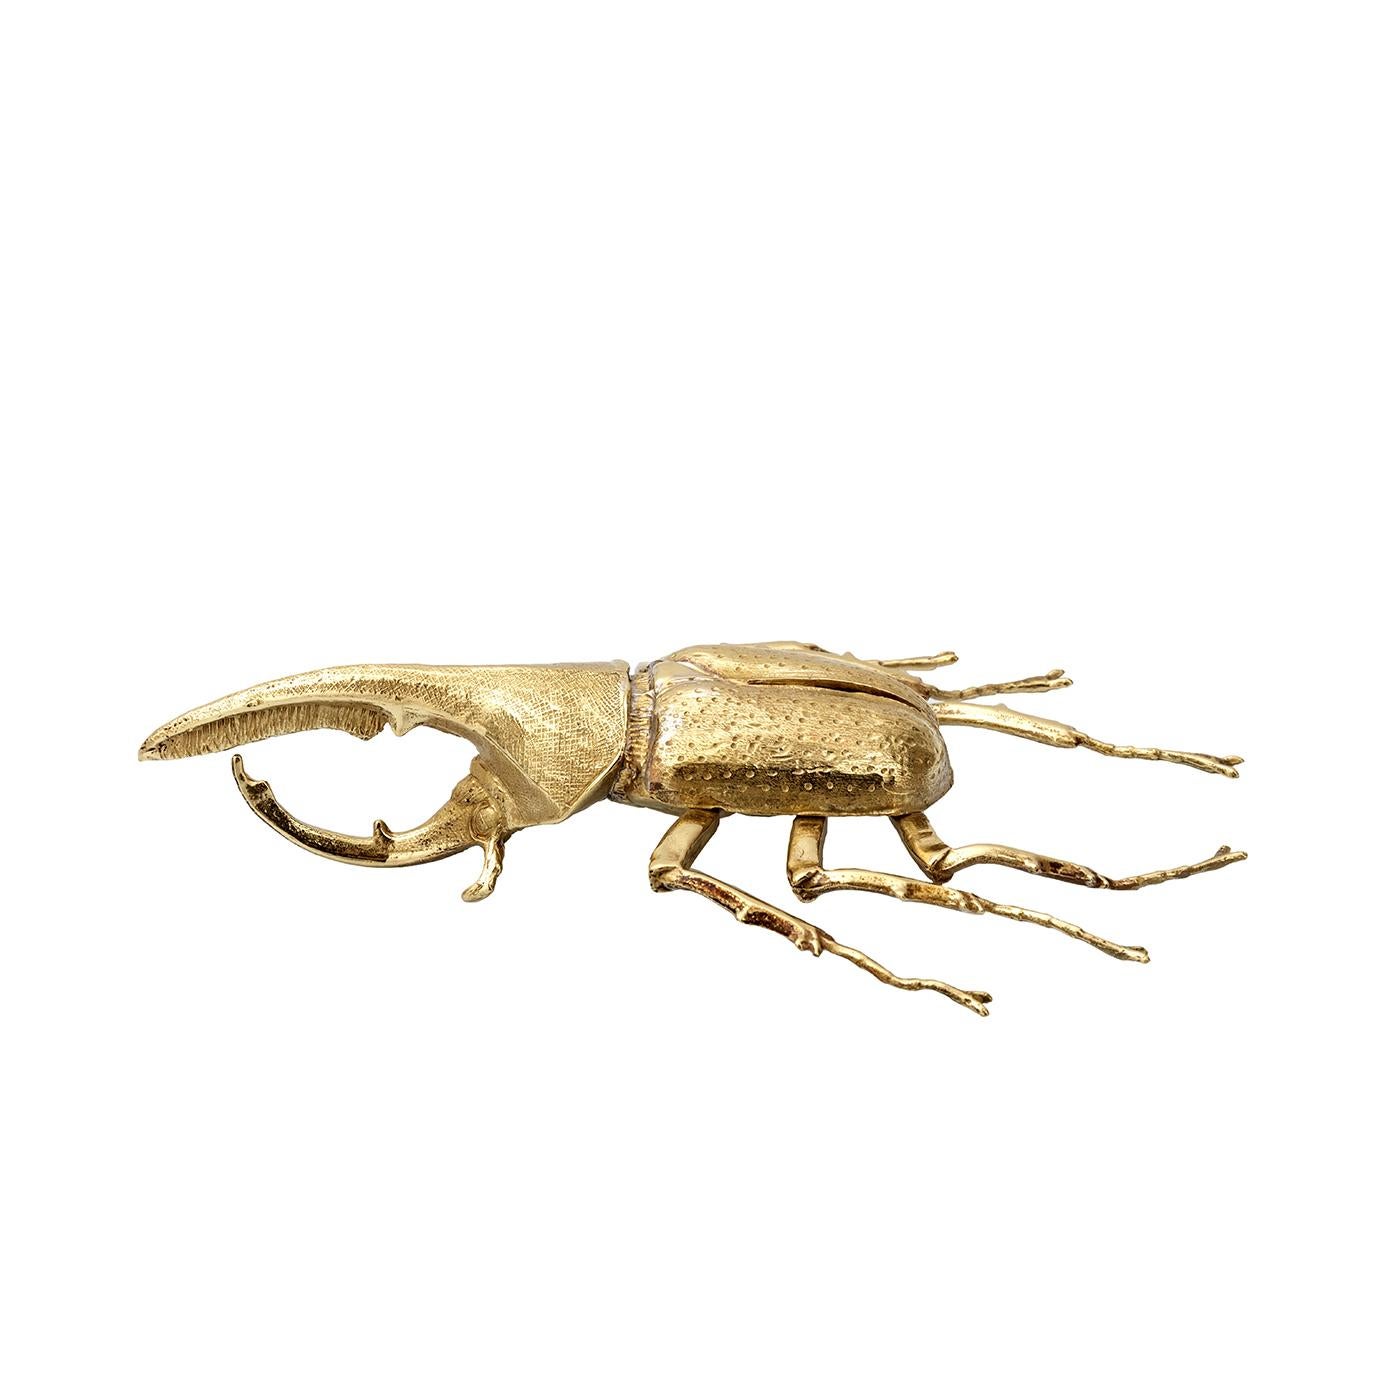 Entièrement ciselé à la main dans du bronze, le presse-papiers en forme de scarabée rhinocéros est à la fois excentrique et intemporel. Parfaite pour un bureau traditionnel, cette pièce assure à la fois l'ordre et l'amusement. La pièce peut